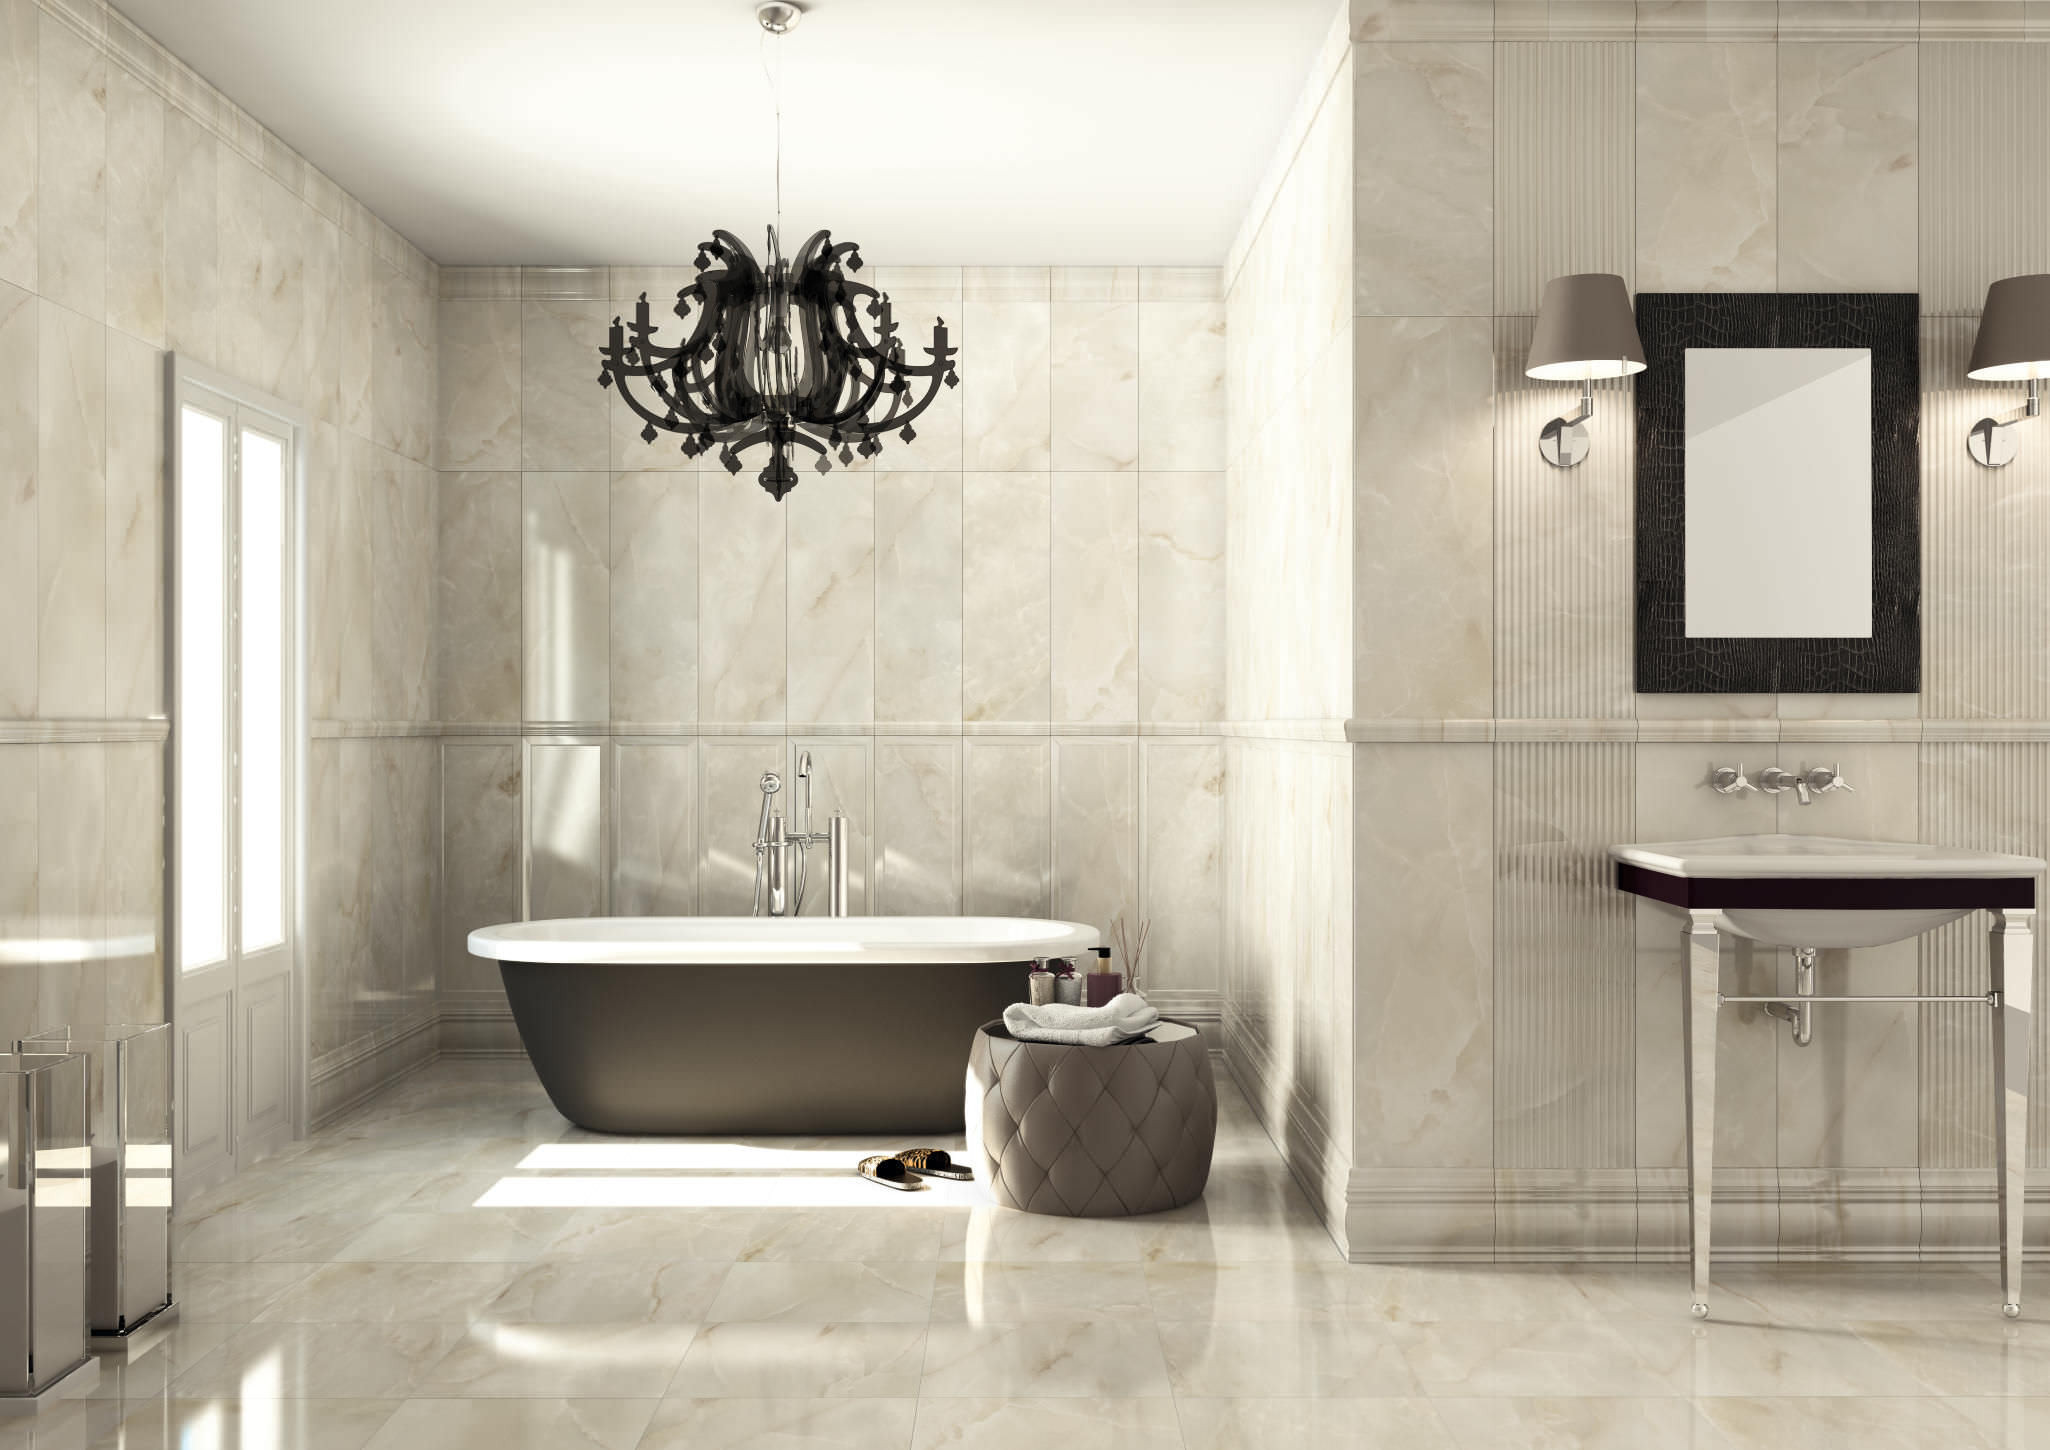 Bathroom Tile Wall
 Gorgeous Modern Bathroom Tiles and Walls Ideas Bathroomist